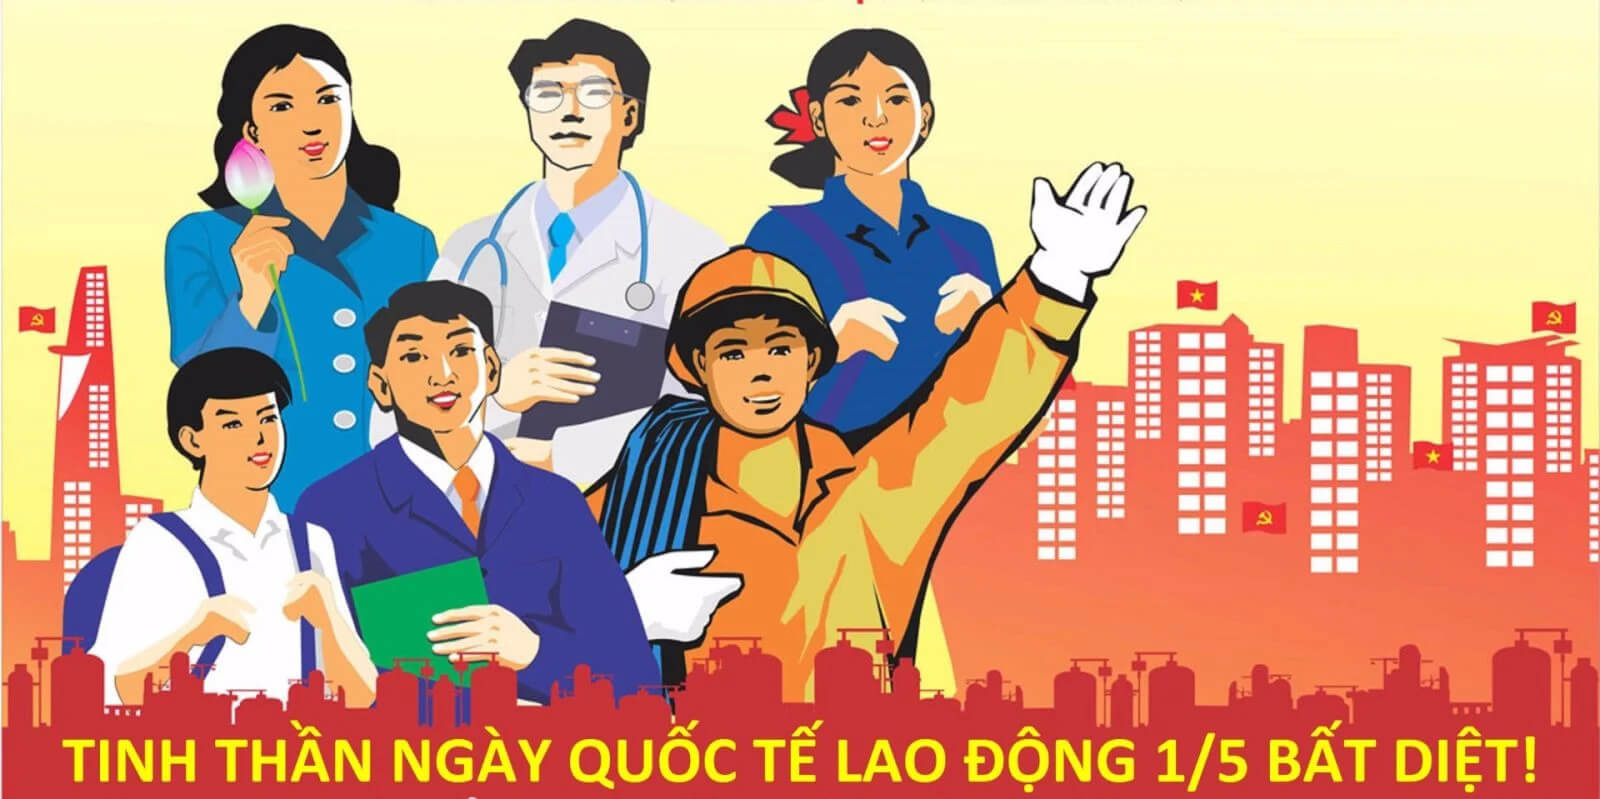 Quốc tế lao động là ngày lễ quan trọng đối với người dân tại Việt Nam